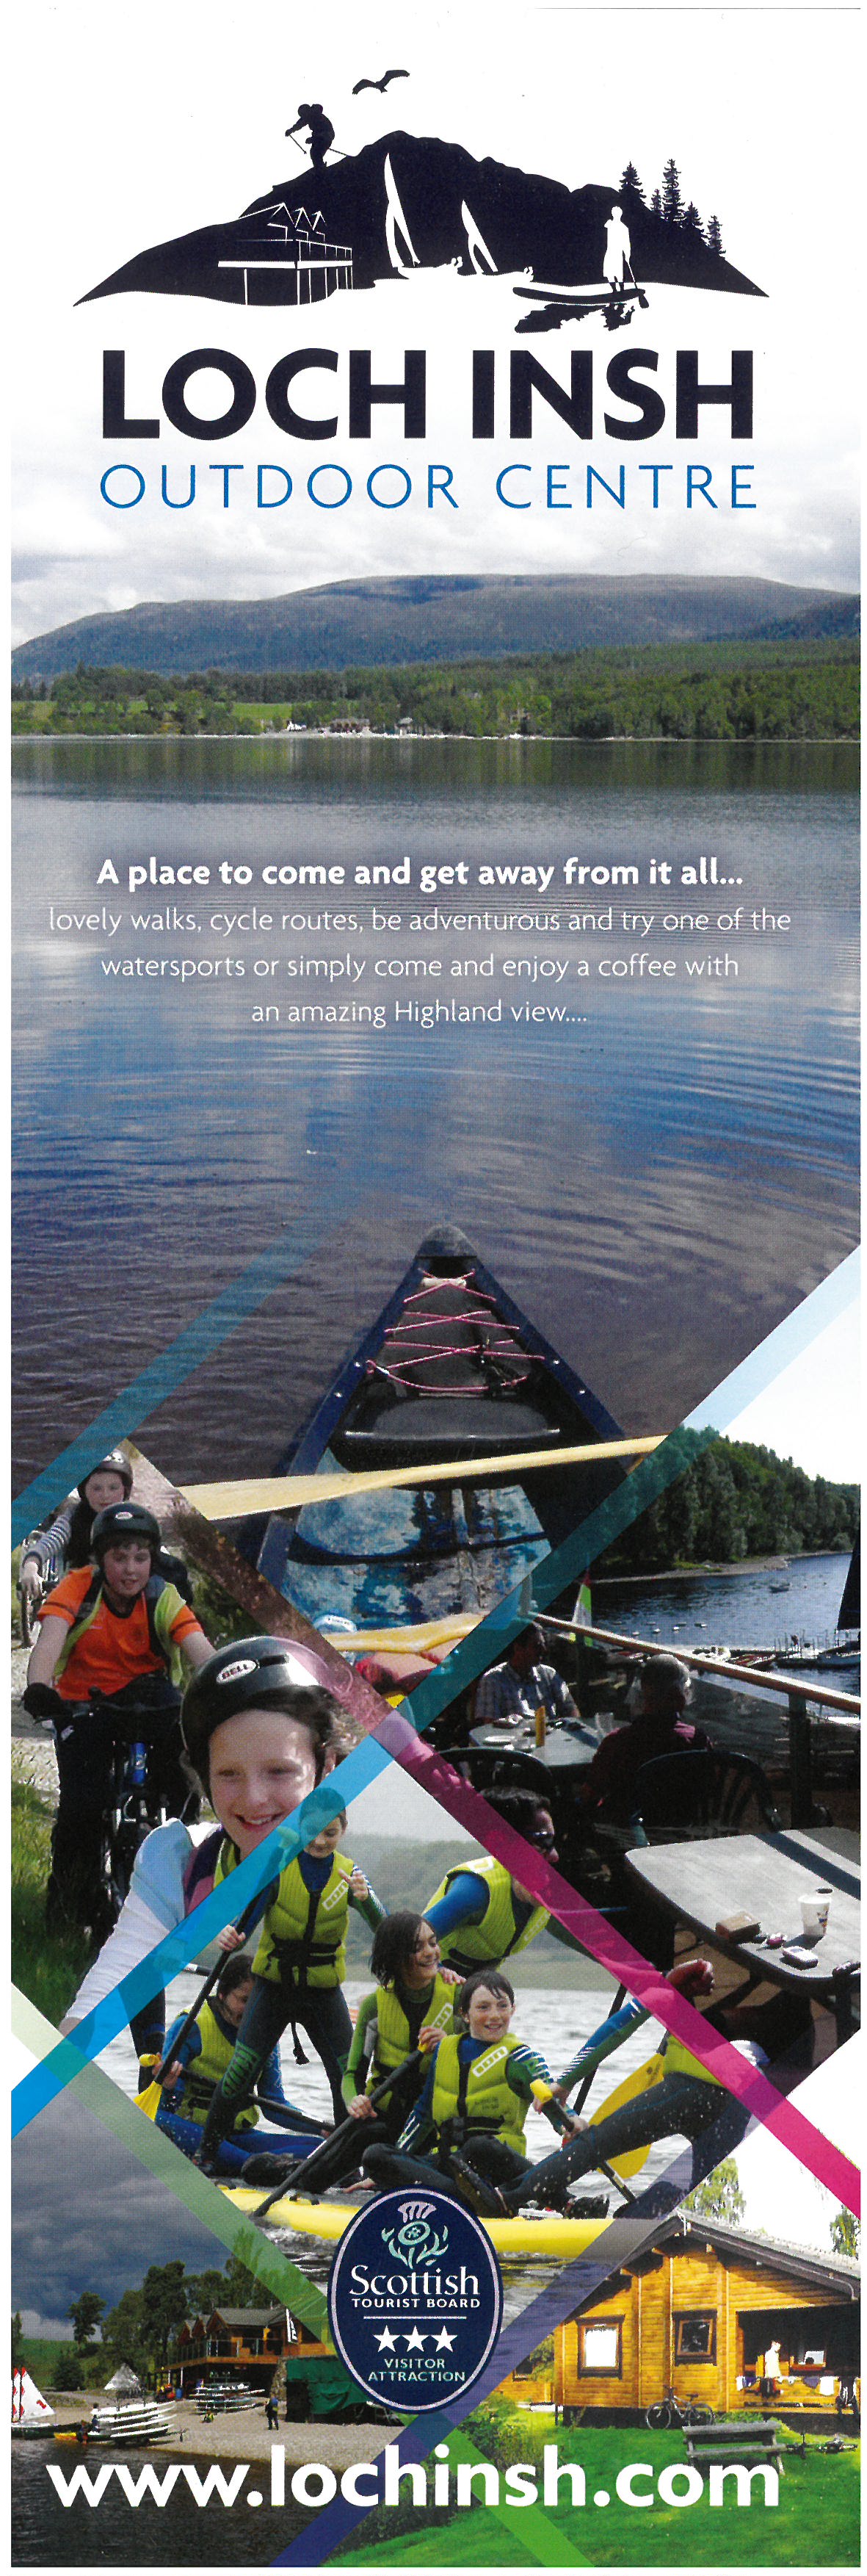 Loch Insh Outdoor Centre brochure thumbnail